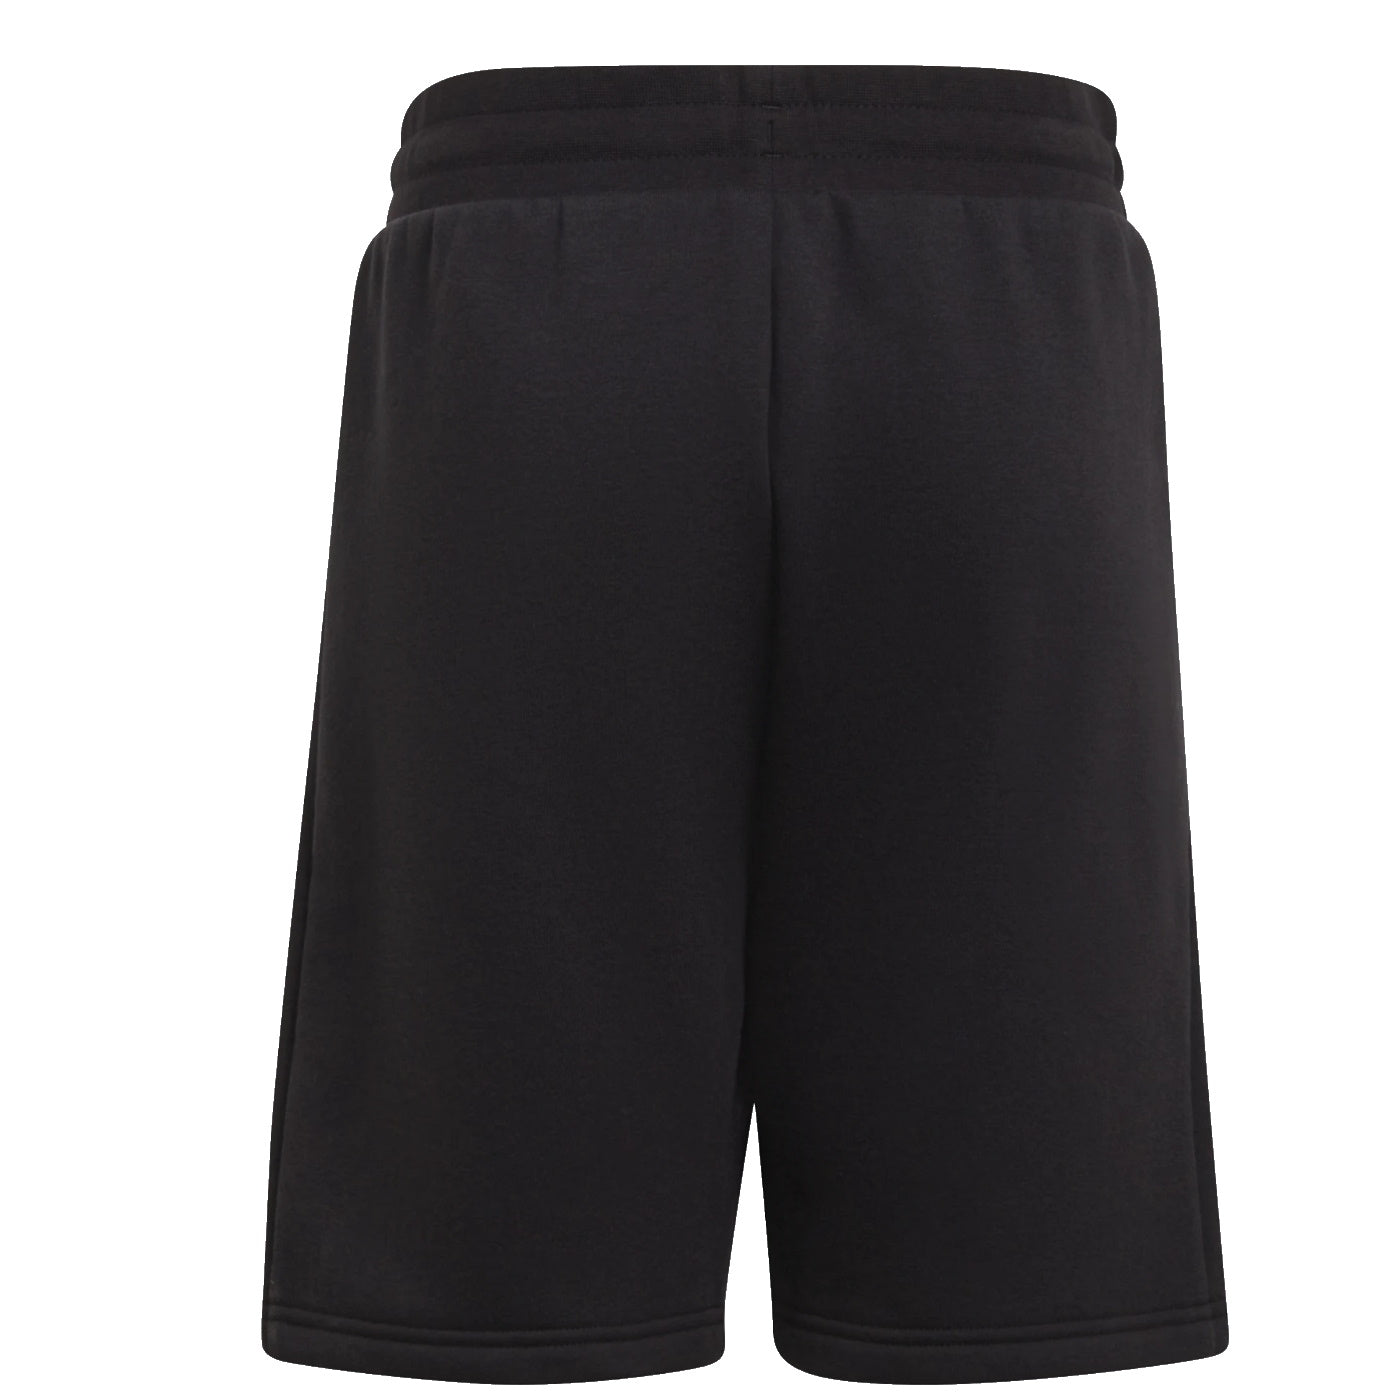 Adidas shorts unisex nero